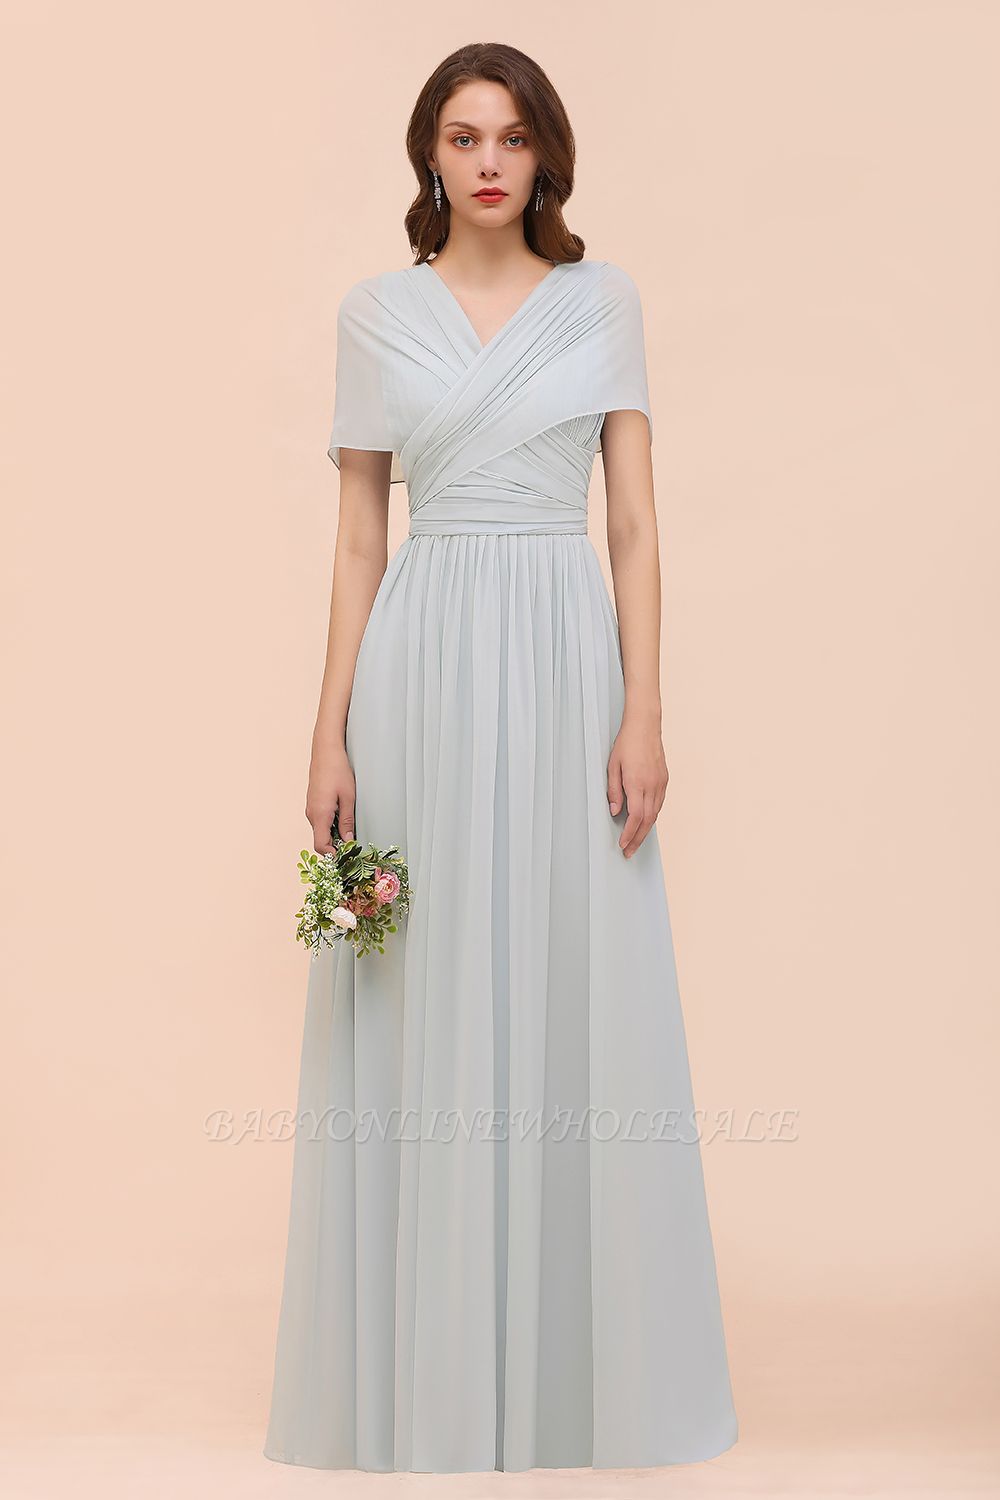 Infinity Brautjungfernkleid Weiches Chiffon Aline Hochzeitsgast Kleid Bodenlanges Abendkleid